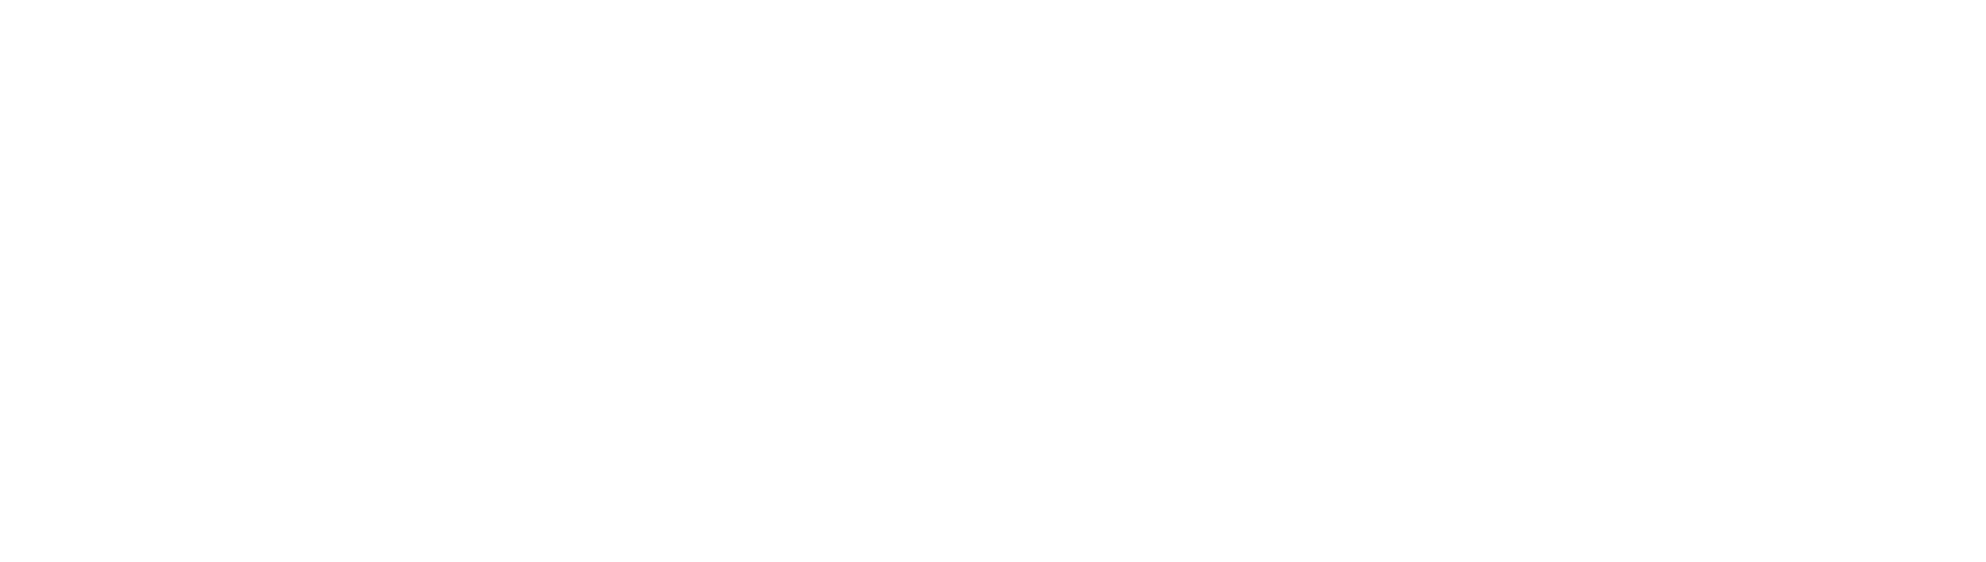 Logo: Basisfot